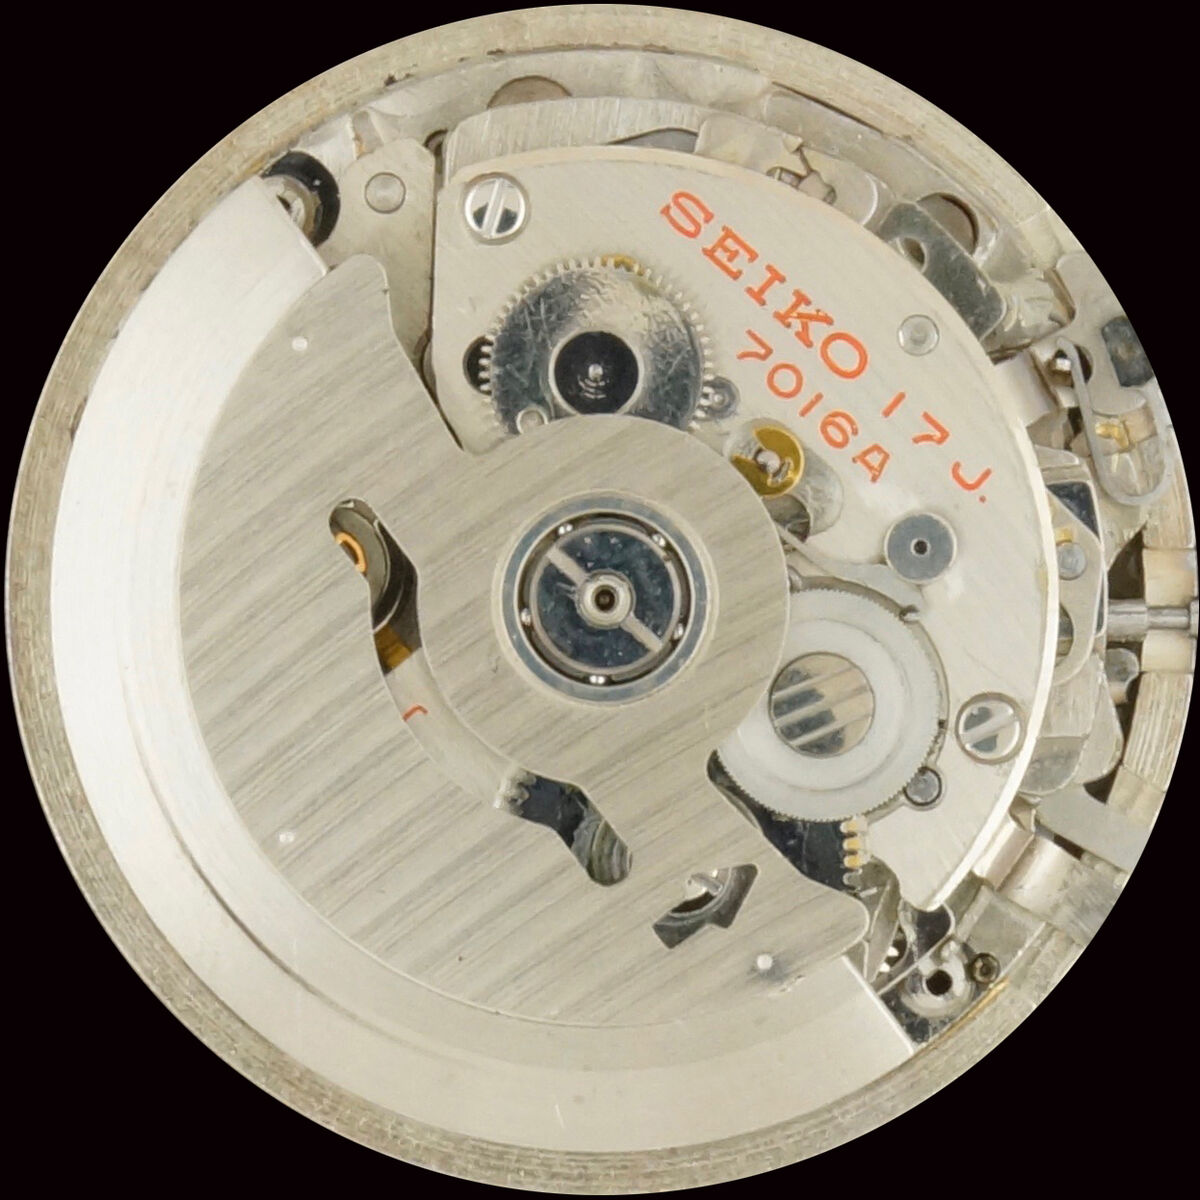 Seiko 7016 A | A La Clinique Horlogère, réparation et vente de montres,  Porrentruy, Jura, Suisse